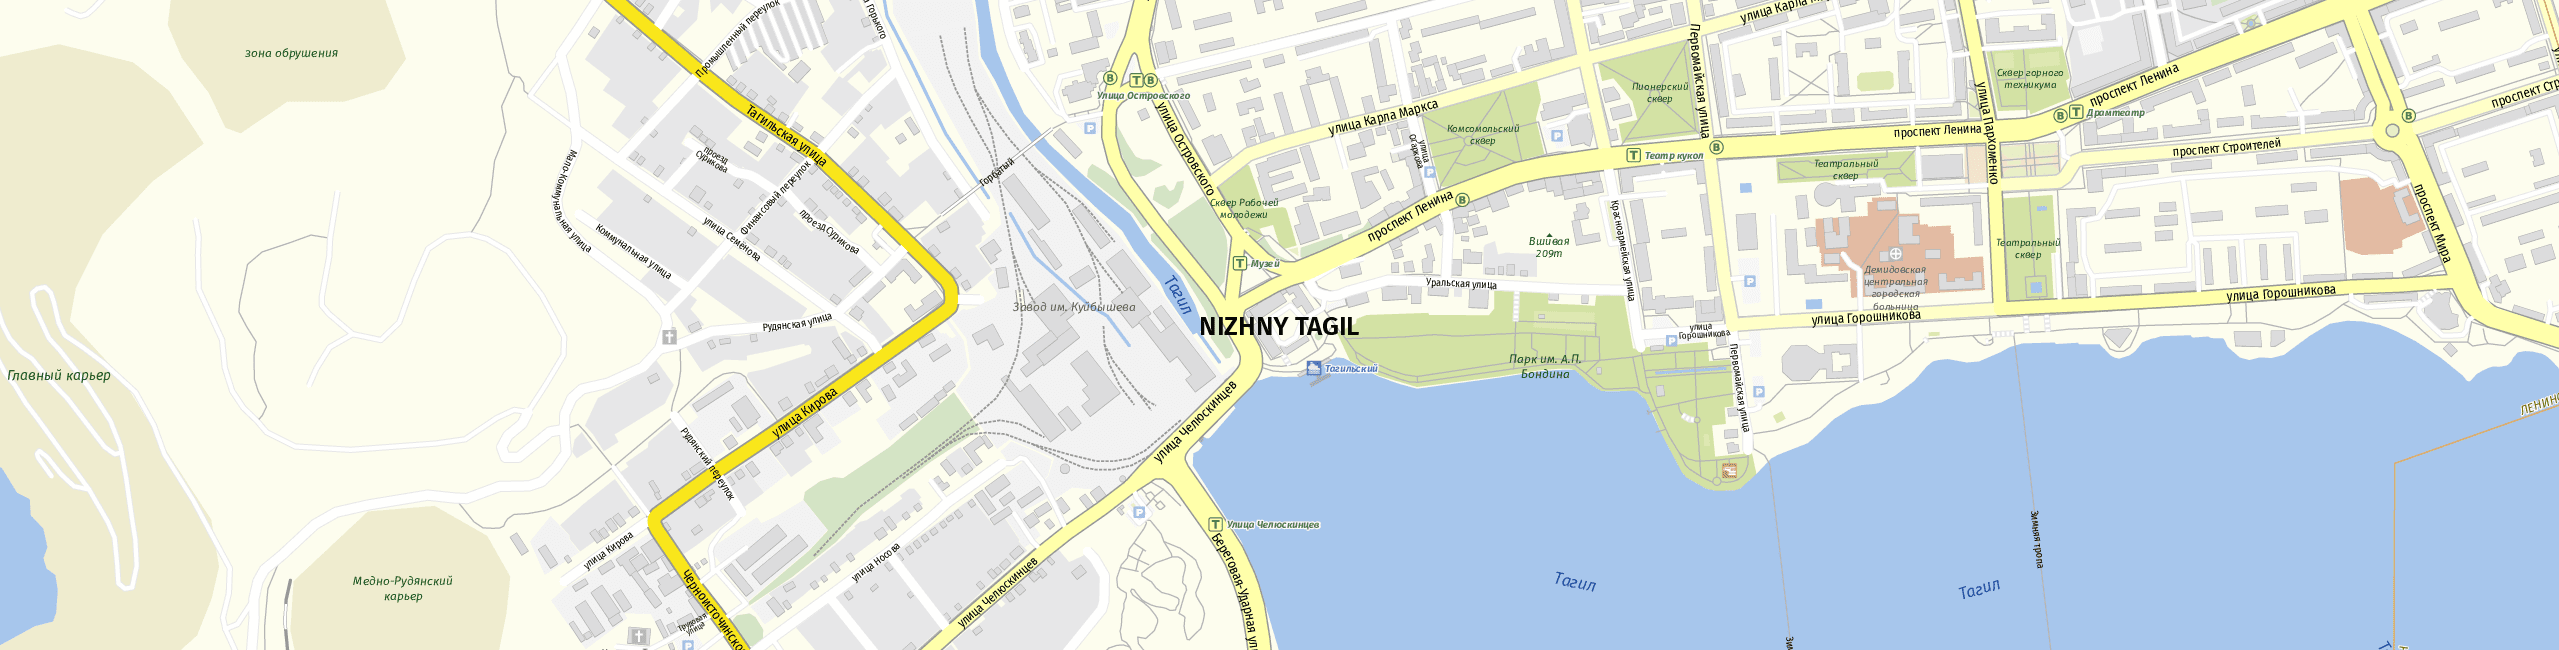 Stadtplan Nizhny Tagil zum Downloaden.